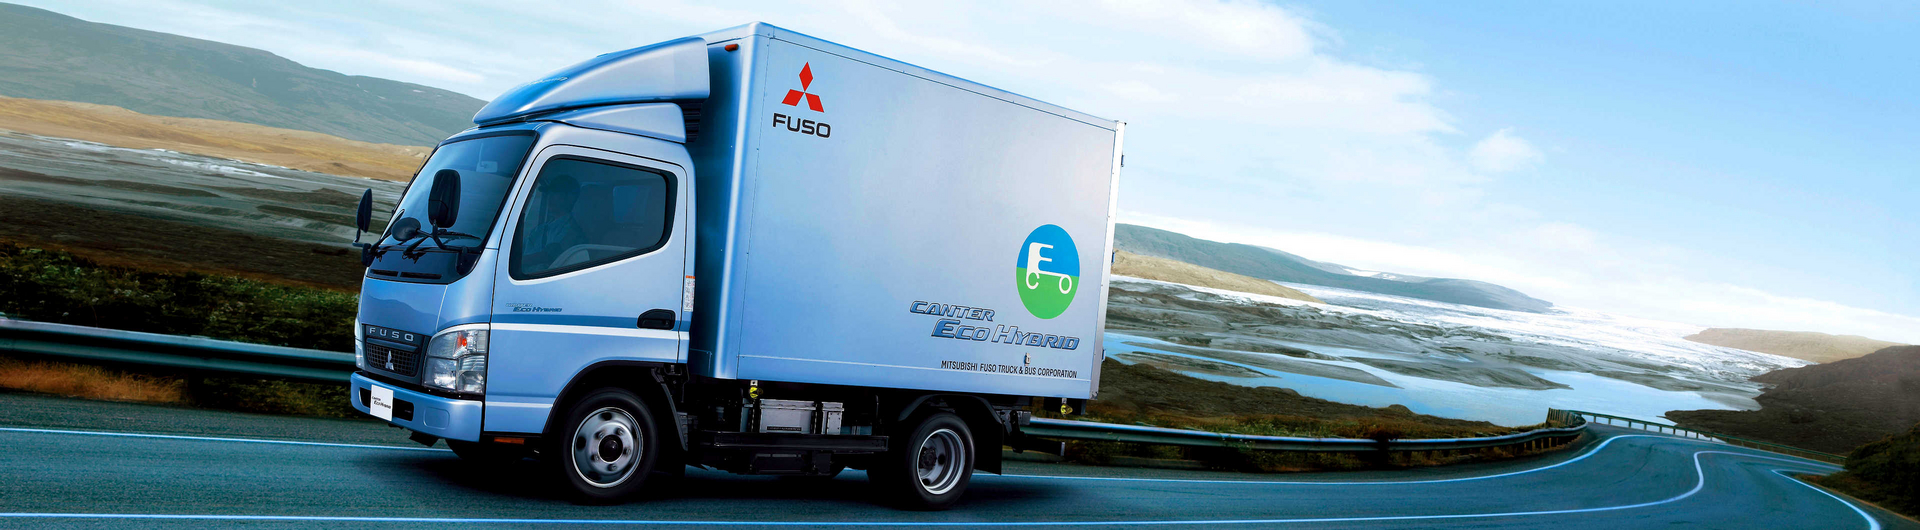 FUSO Canter Eco Hybrid - der Vorreiter im Nutzfahrzeug Segment